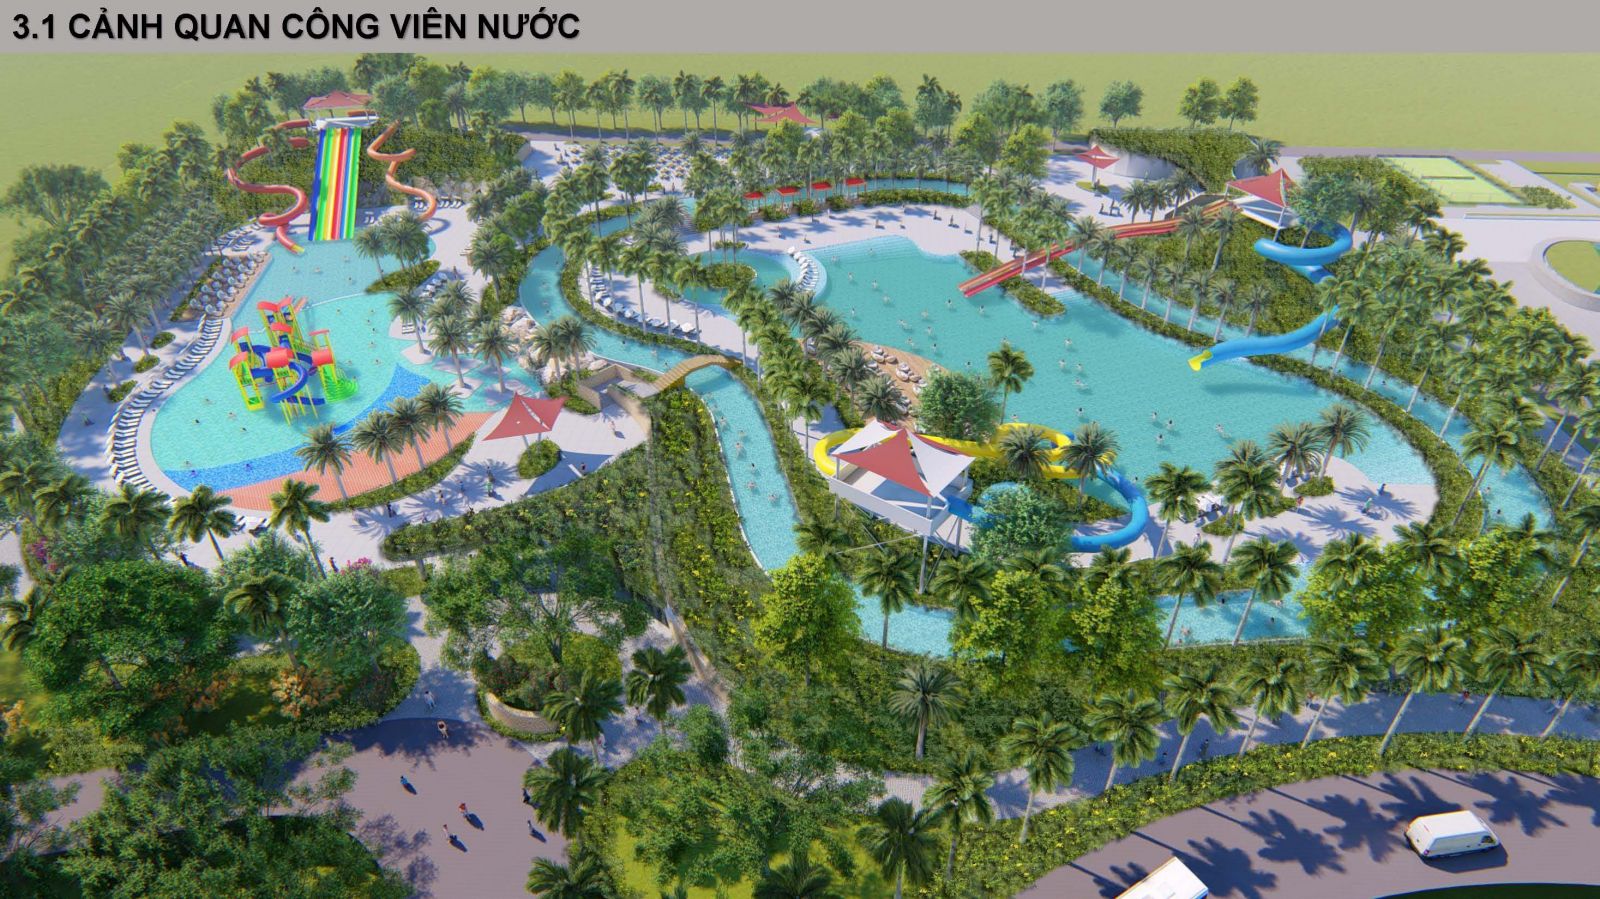 Cảnh quan công viên nước của dự án SunBay Cam Ranh Resort & Spa